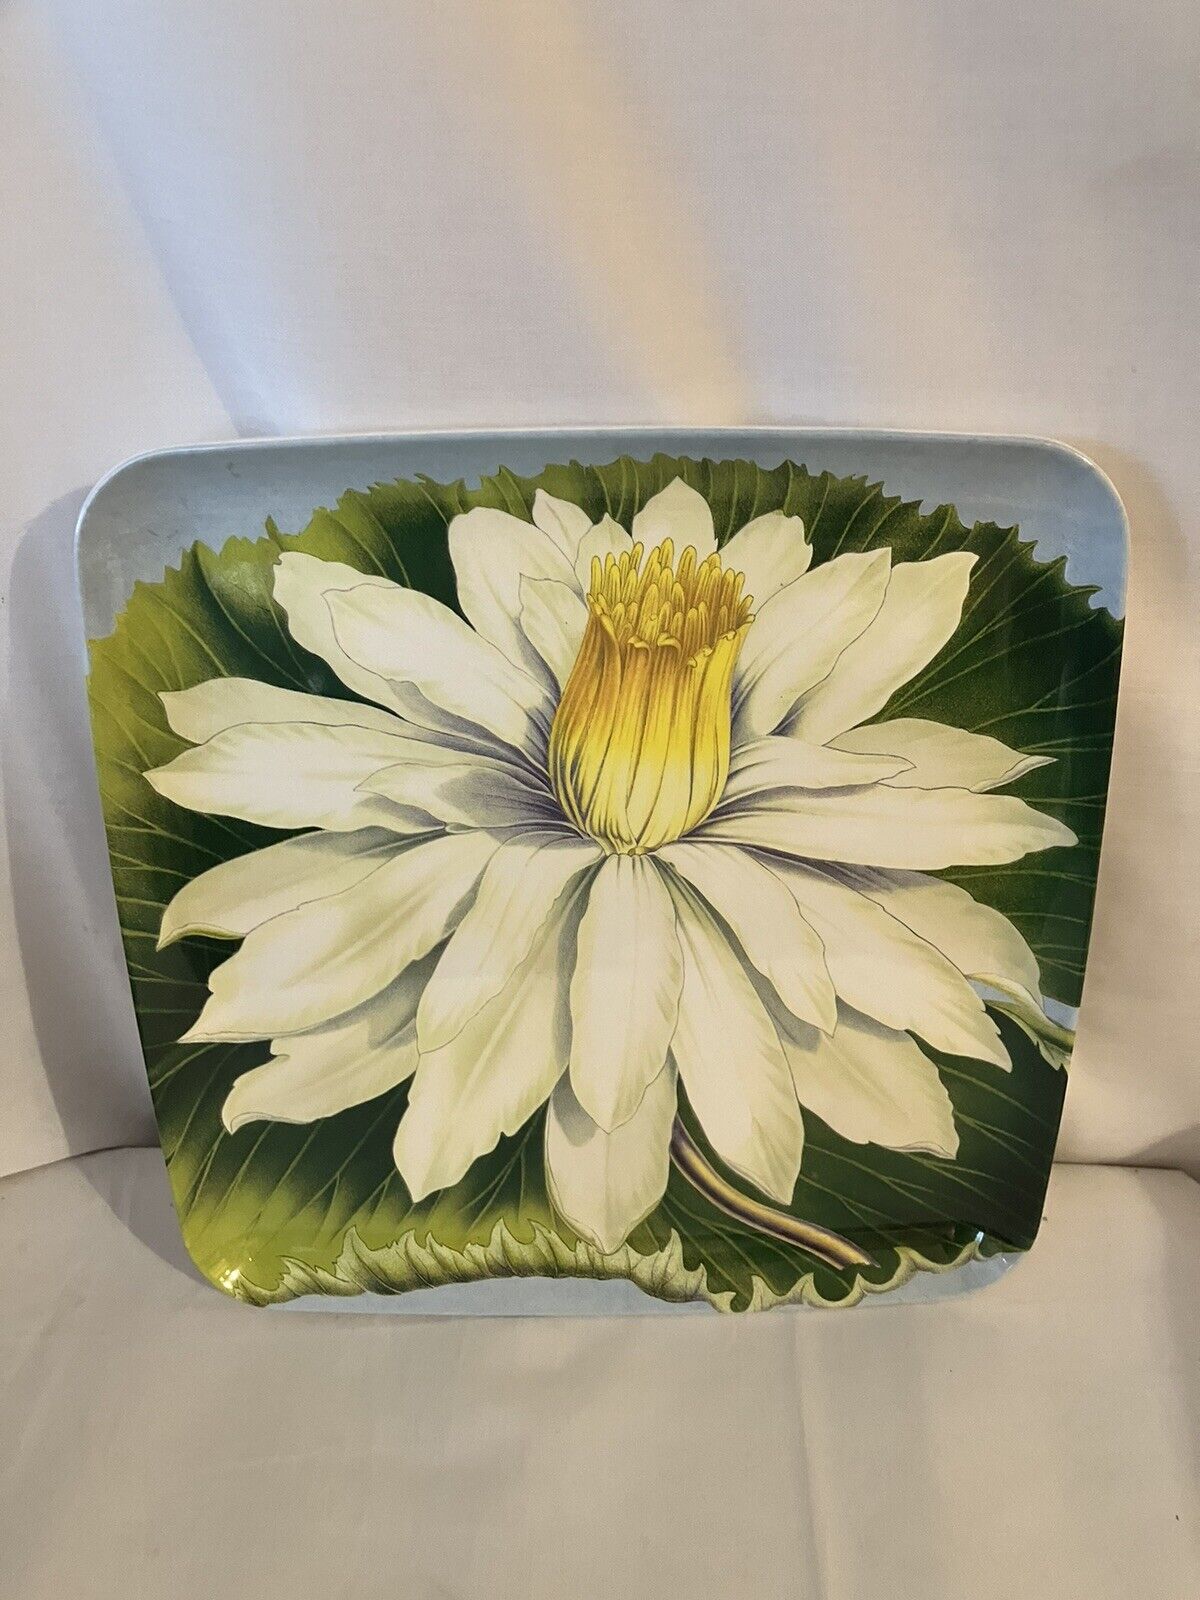 NWOT John Derian for Target Melamine Square Flower Plate Serving Tray